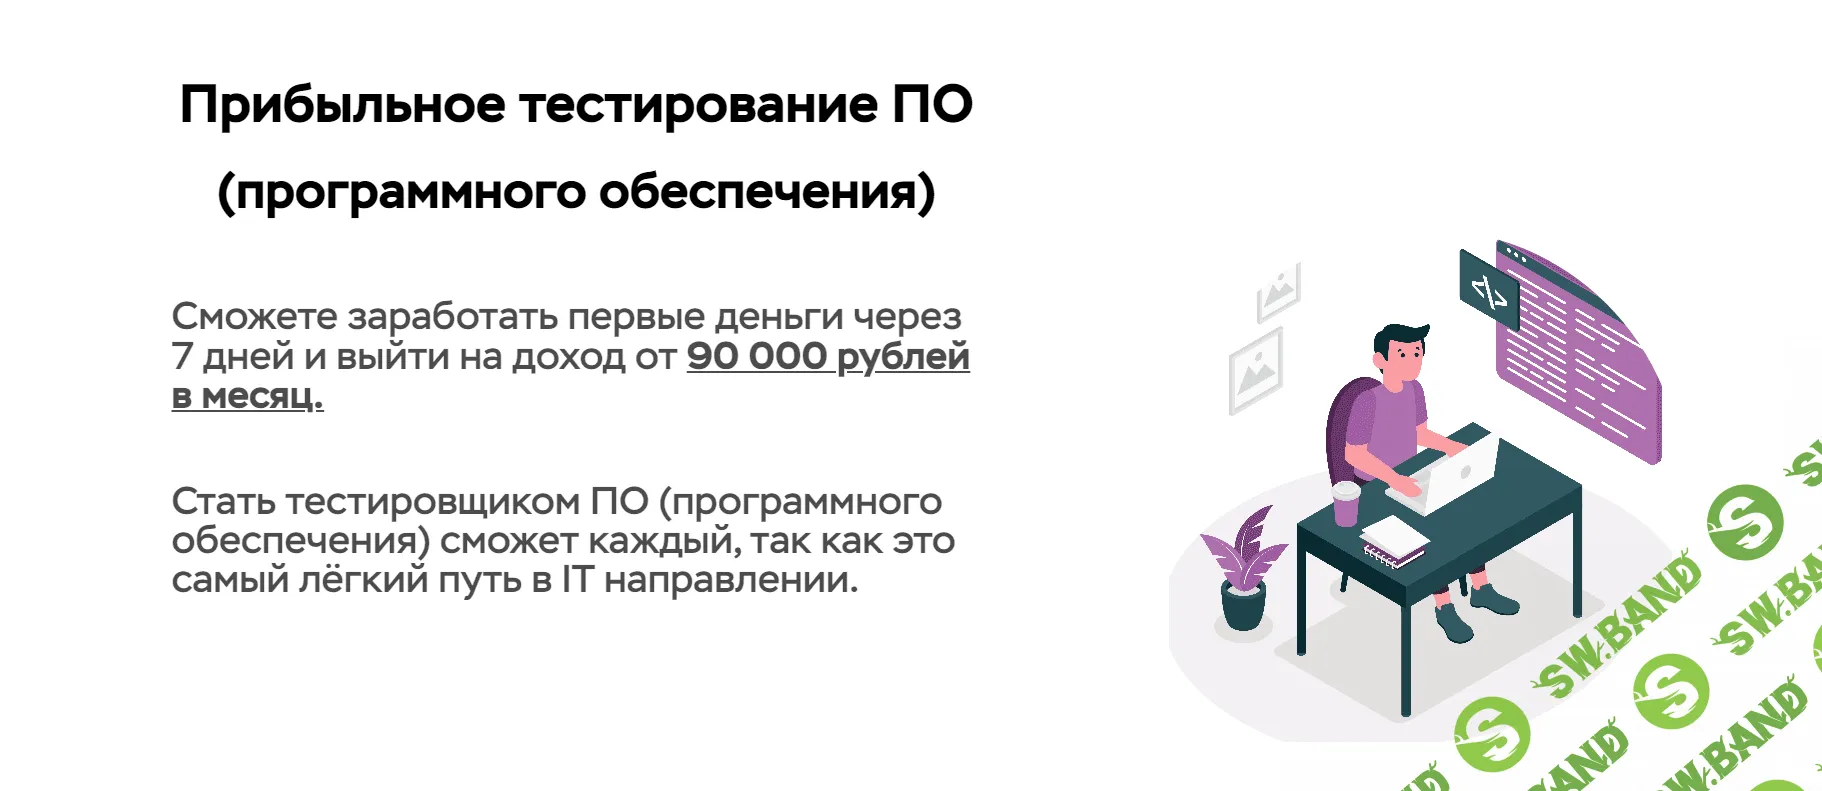 [Виталий Искра] Заработок от 90 000 рублей в месяц на тестировании ПО (2022)